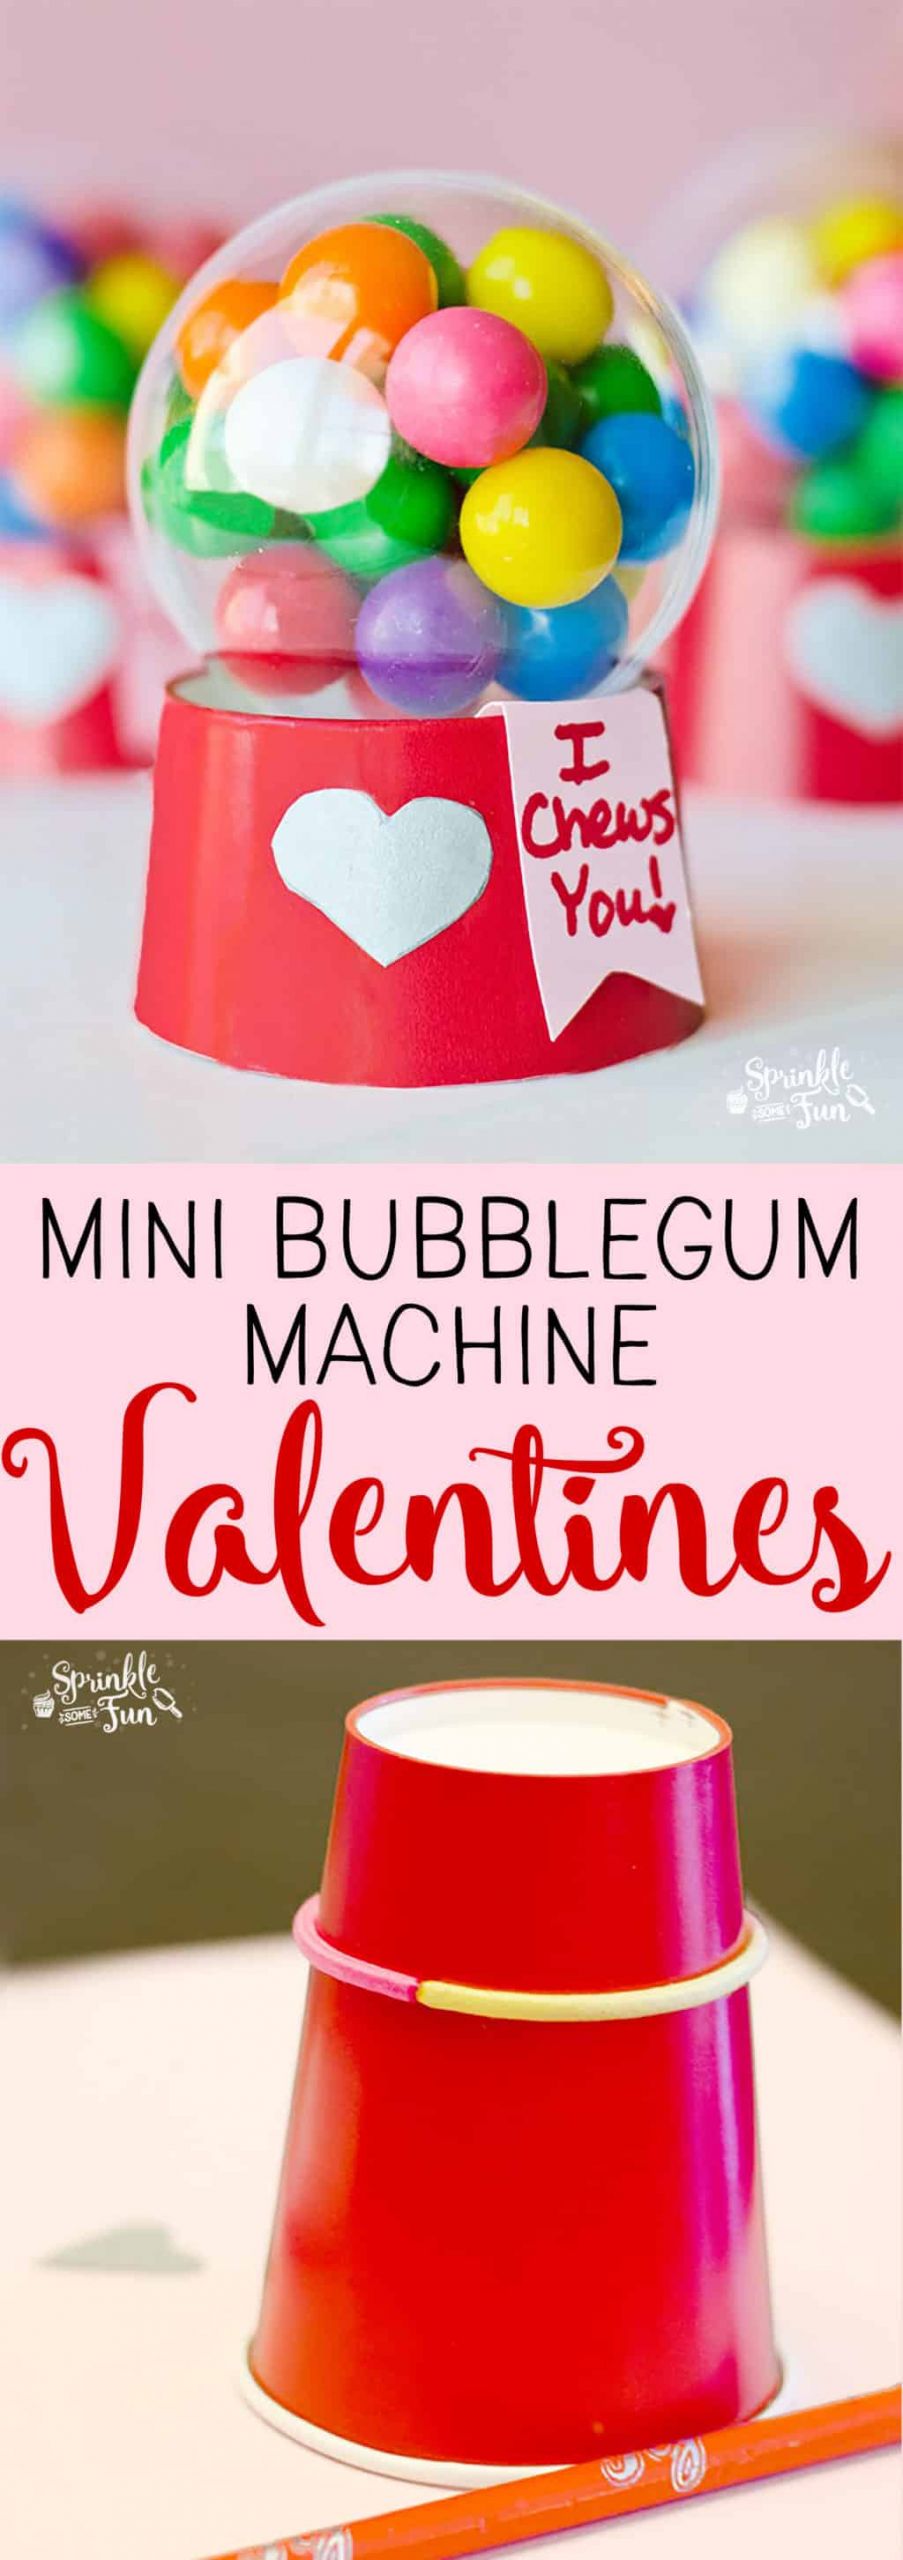 Valentines Gifts From Kids
 Mini Bubblegum Machine Valentines